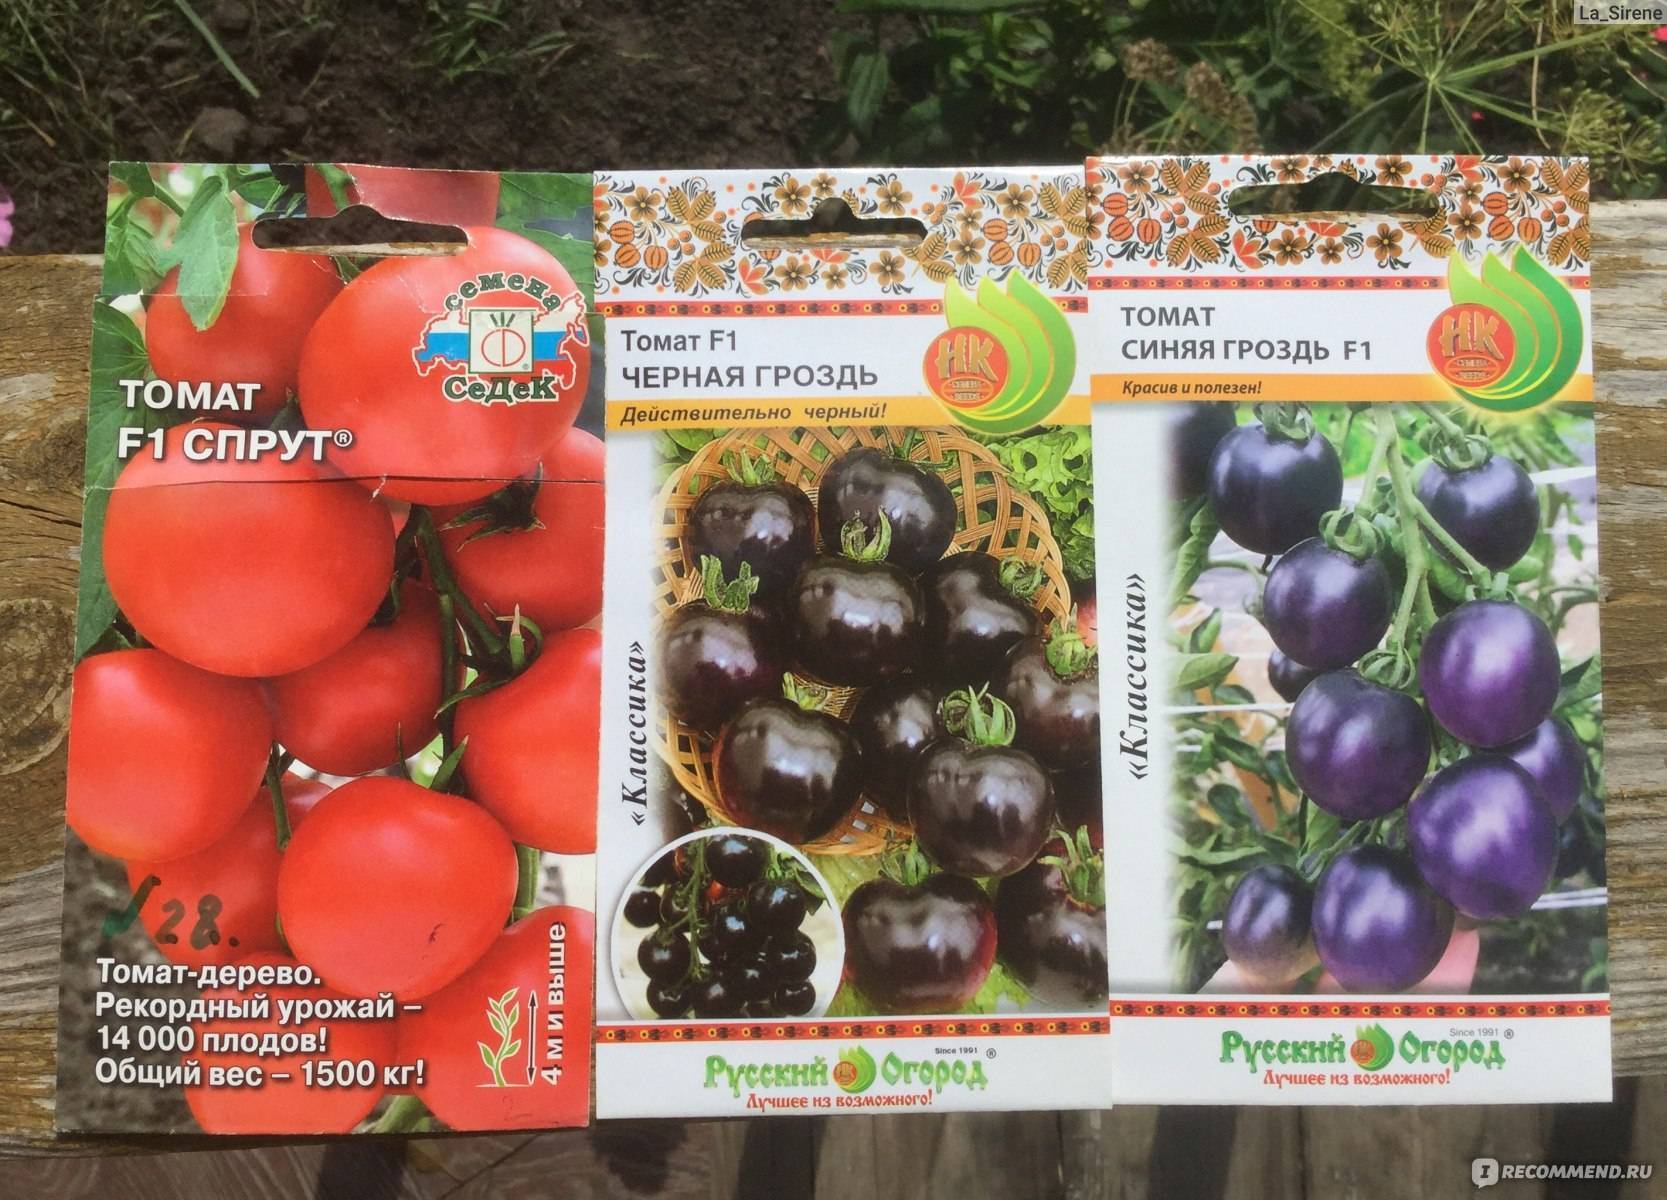 Удивите гостей и соседей необычными помидорами — томат «черная гроздь f1»